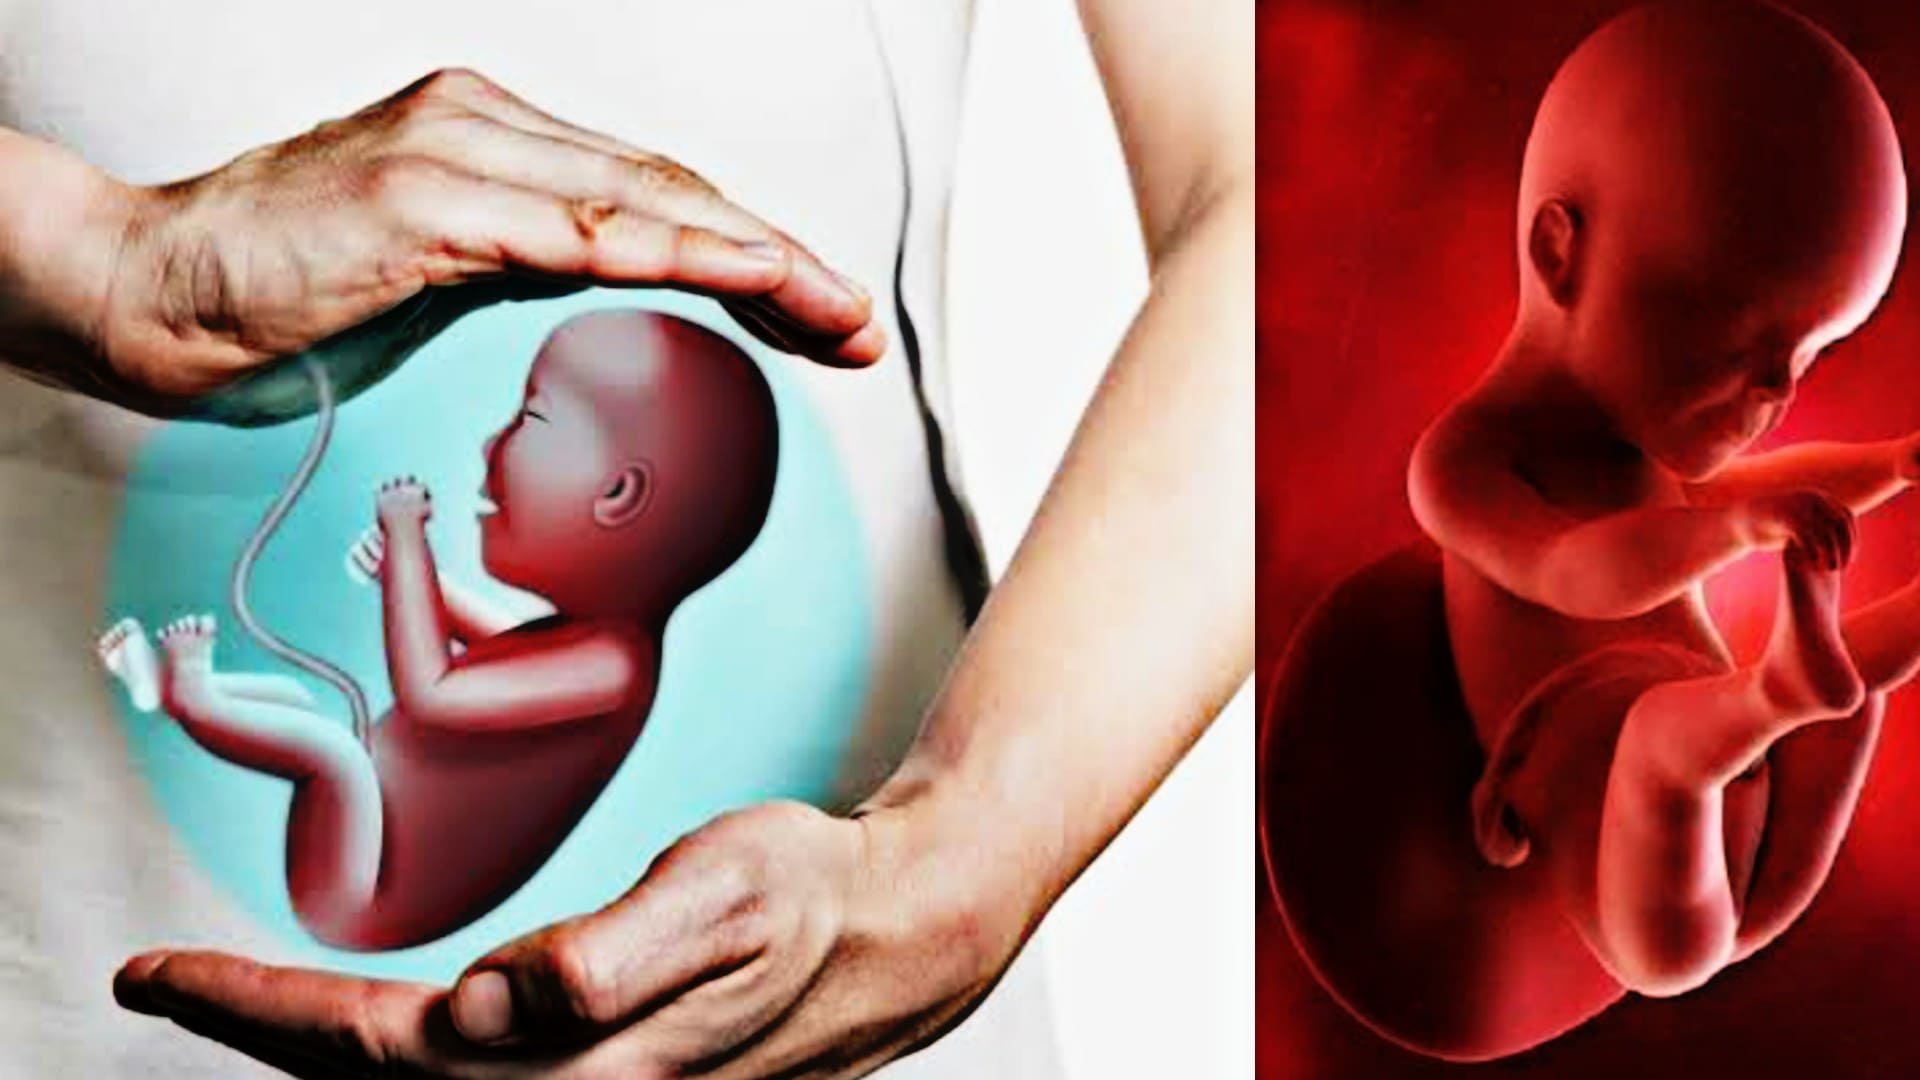 What is fetal malformaty